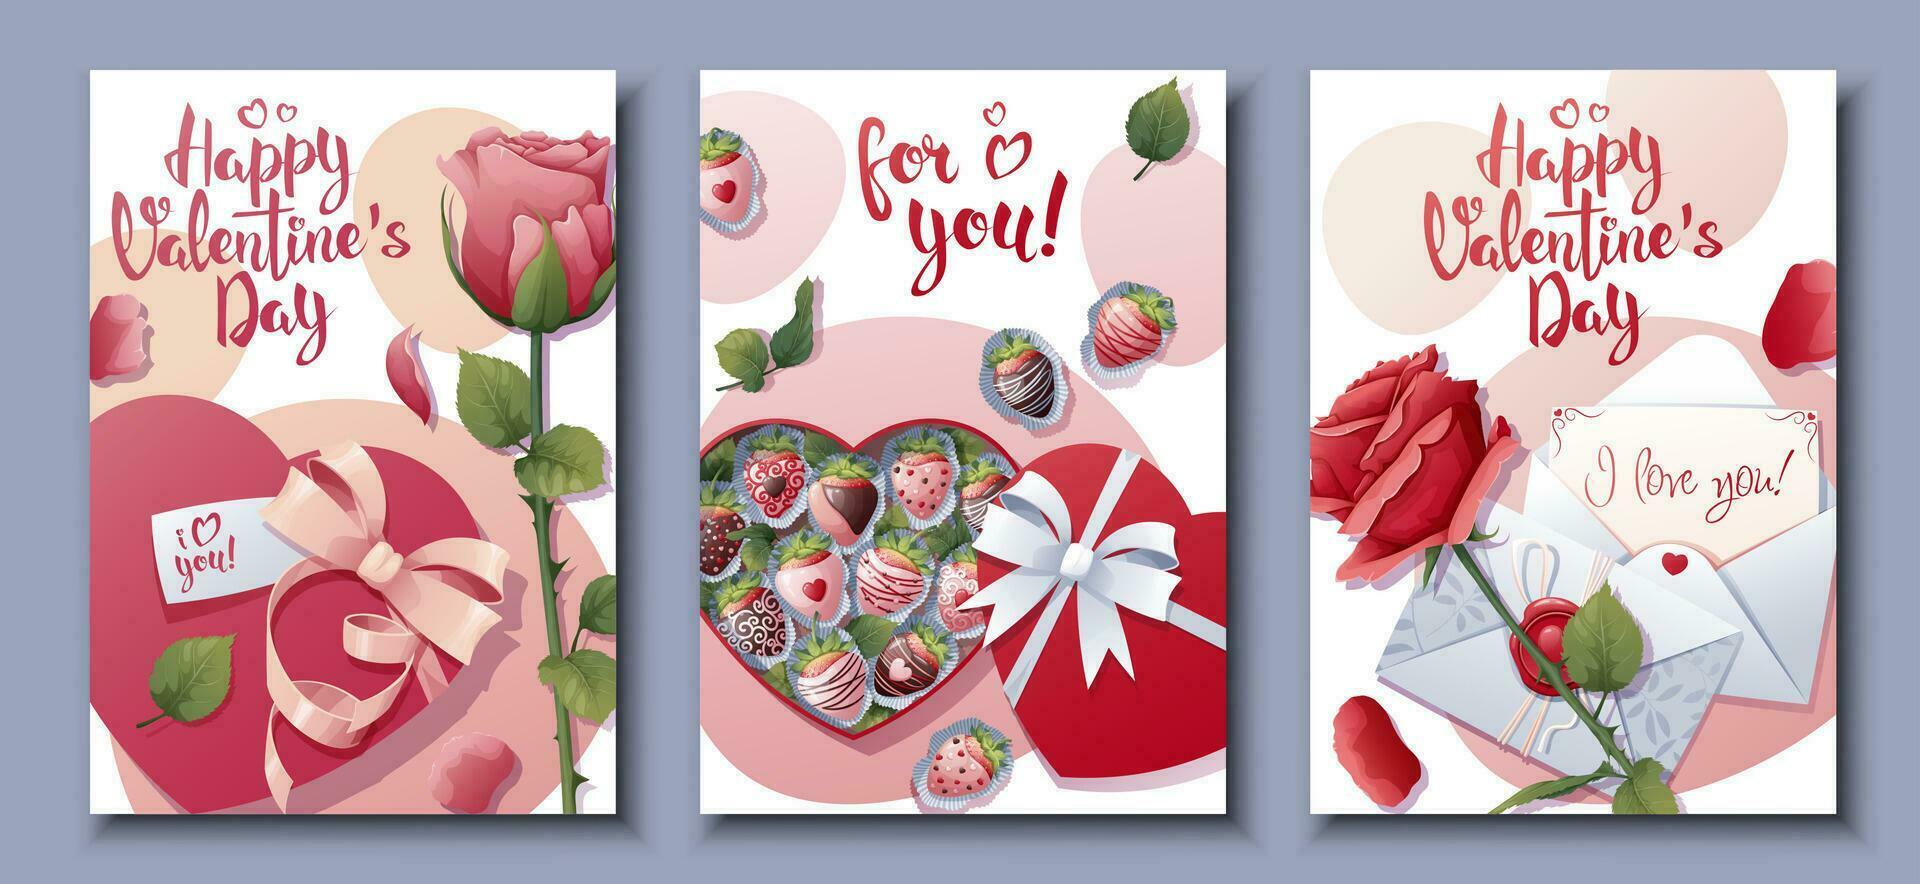 uppsättning av kort för Lycklig valentine s dag.affisch med rosor, gåva, choklad täckt jordgubbar.. festlig ljus vykort, kärlek kreativ begrepp. a4 vektor illustration för baner, affisch, kort.